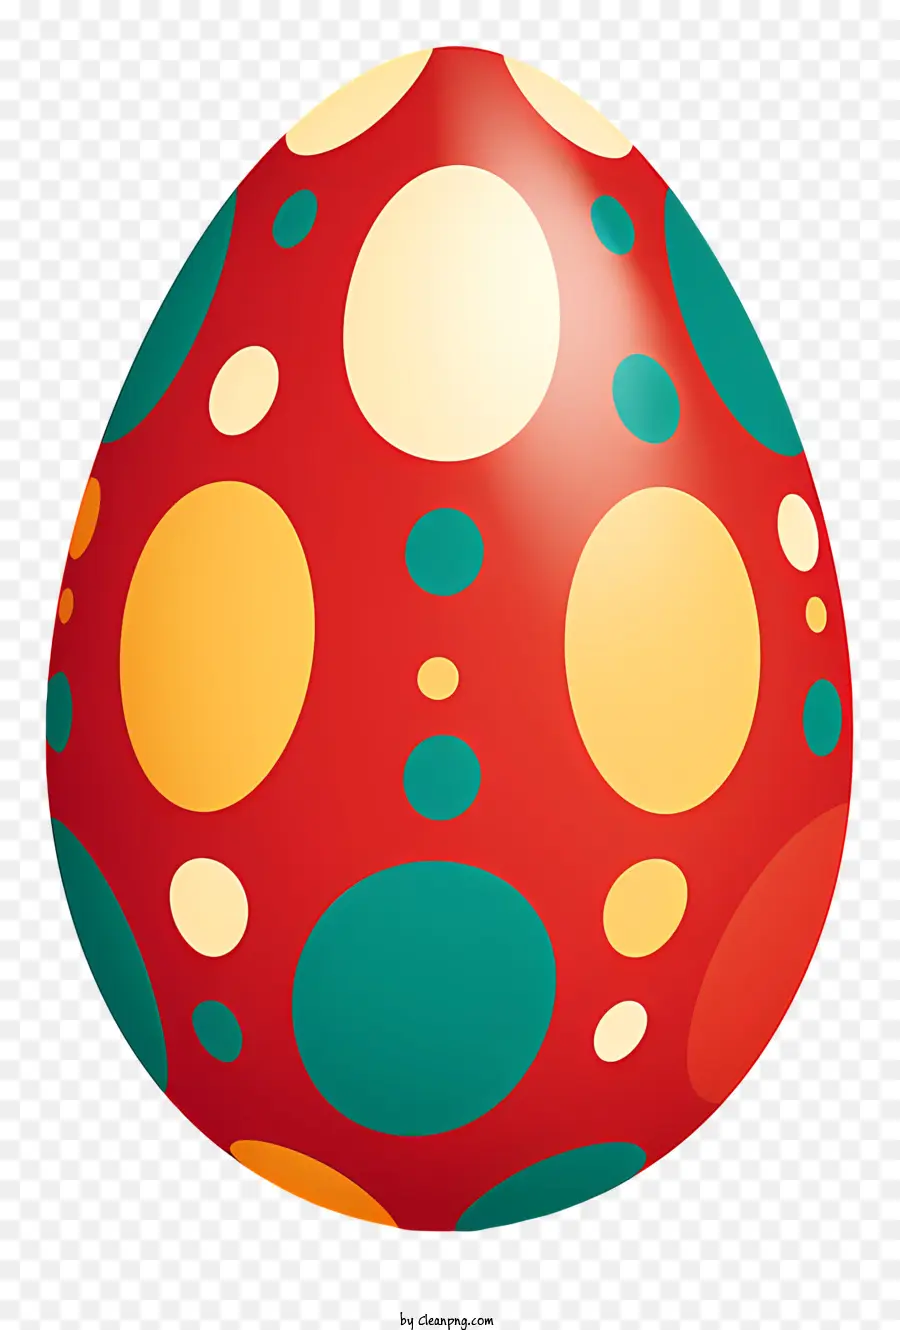 trứng phục sinh - Trứng chấm polka với hình dạng và màu sắc tiêu chuẩn